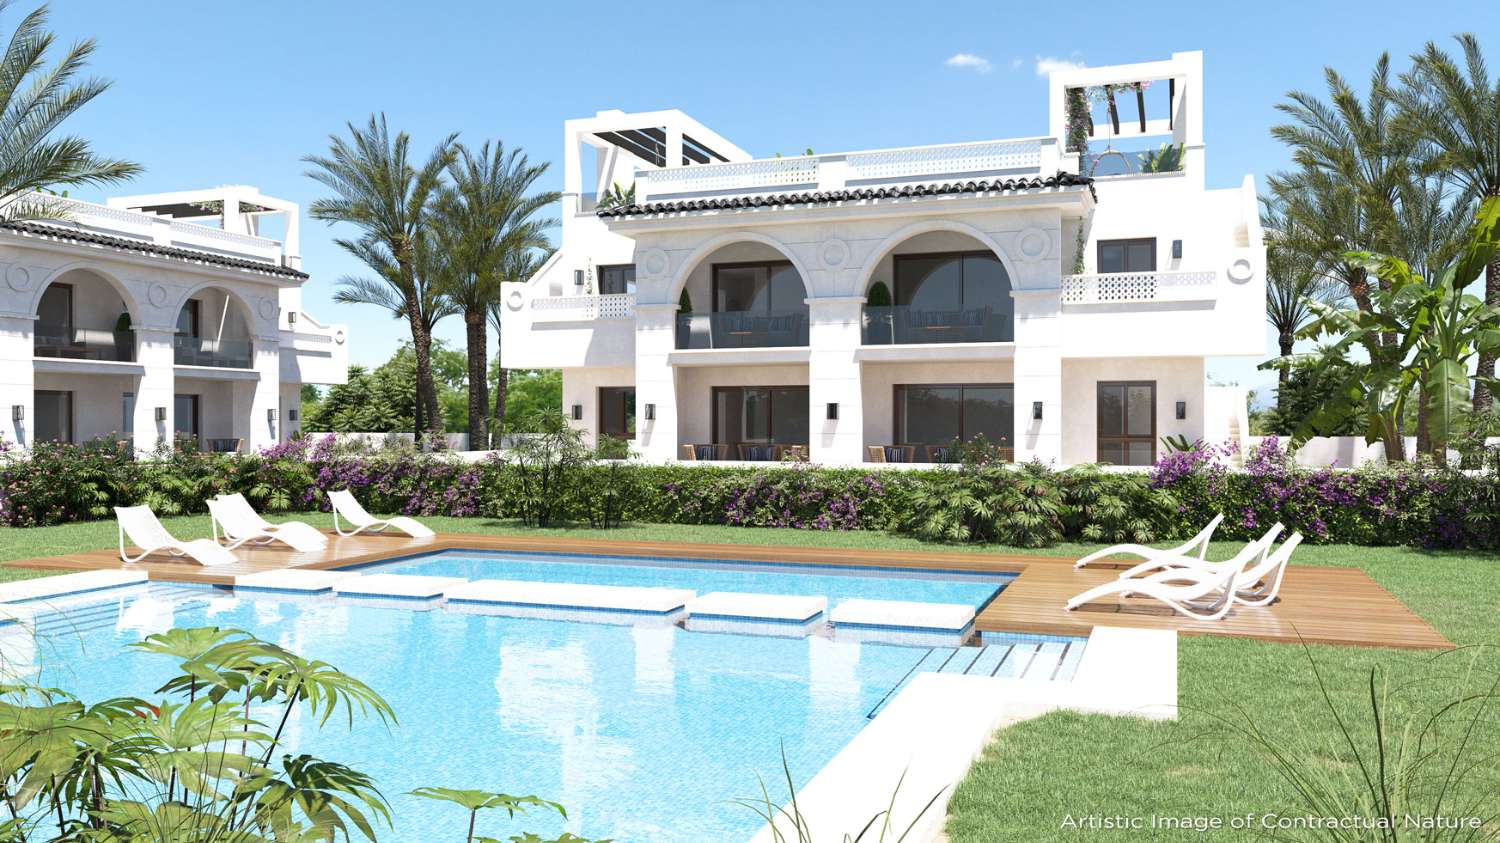 Neue private Residenz mit wunderschönen Apartments im mediterranen Stil in Ciudad Quesada